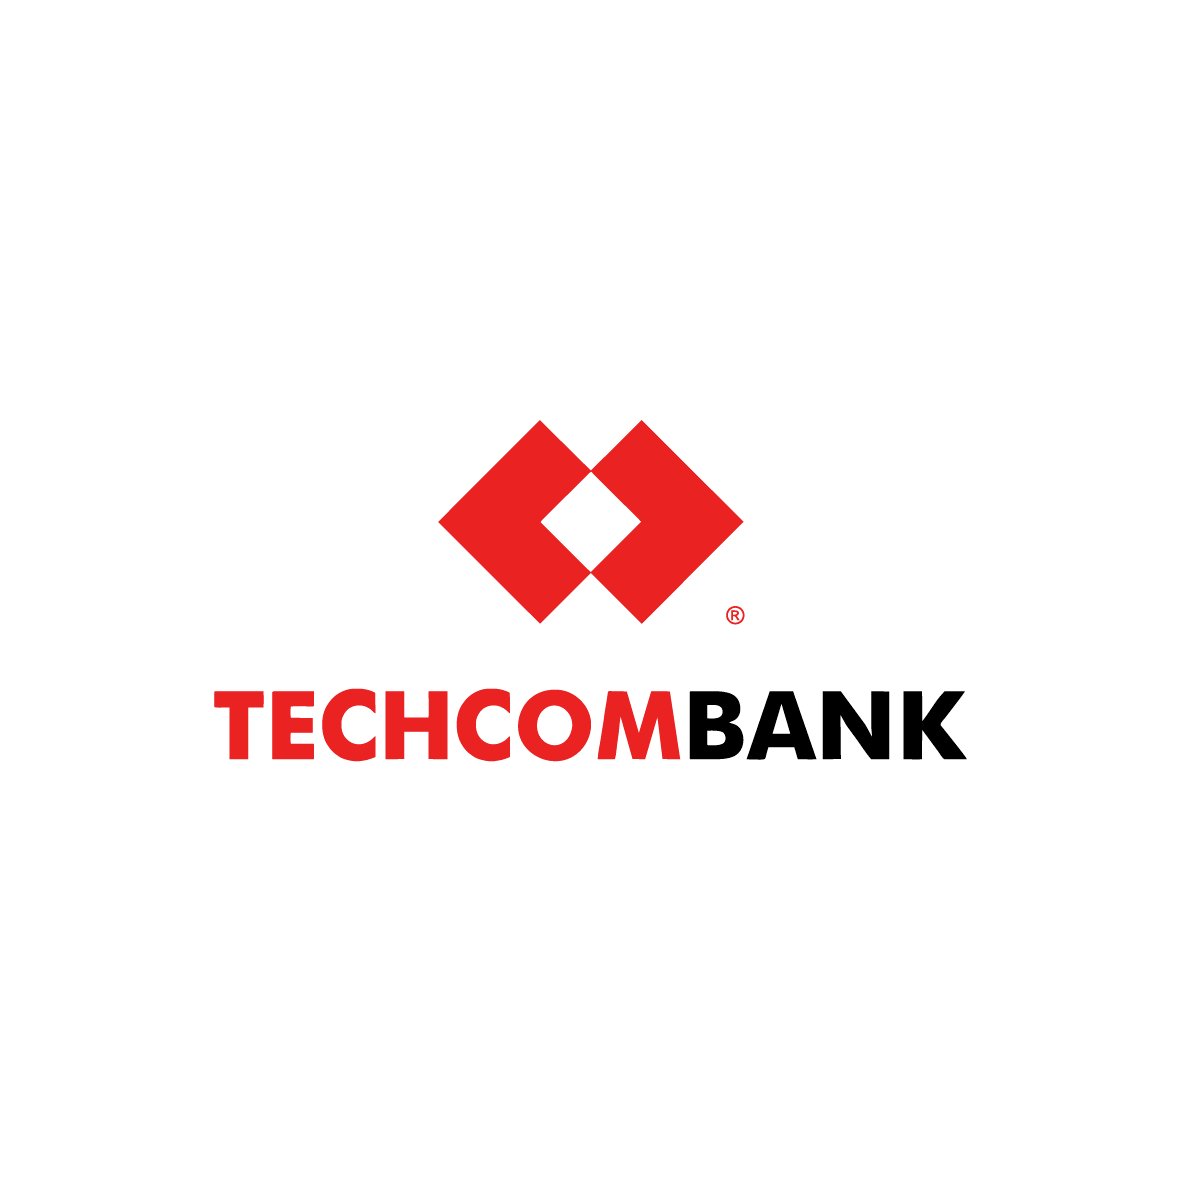 Biểu tượng đại diện chính thức techcombank logo hiện đại và chuyên nghiệp